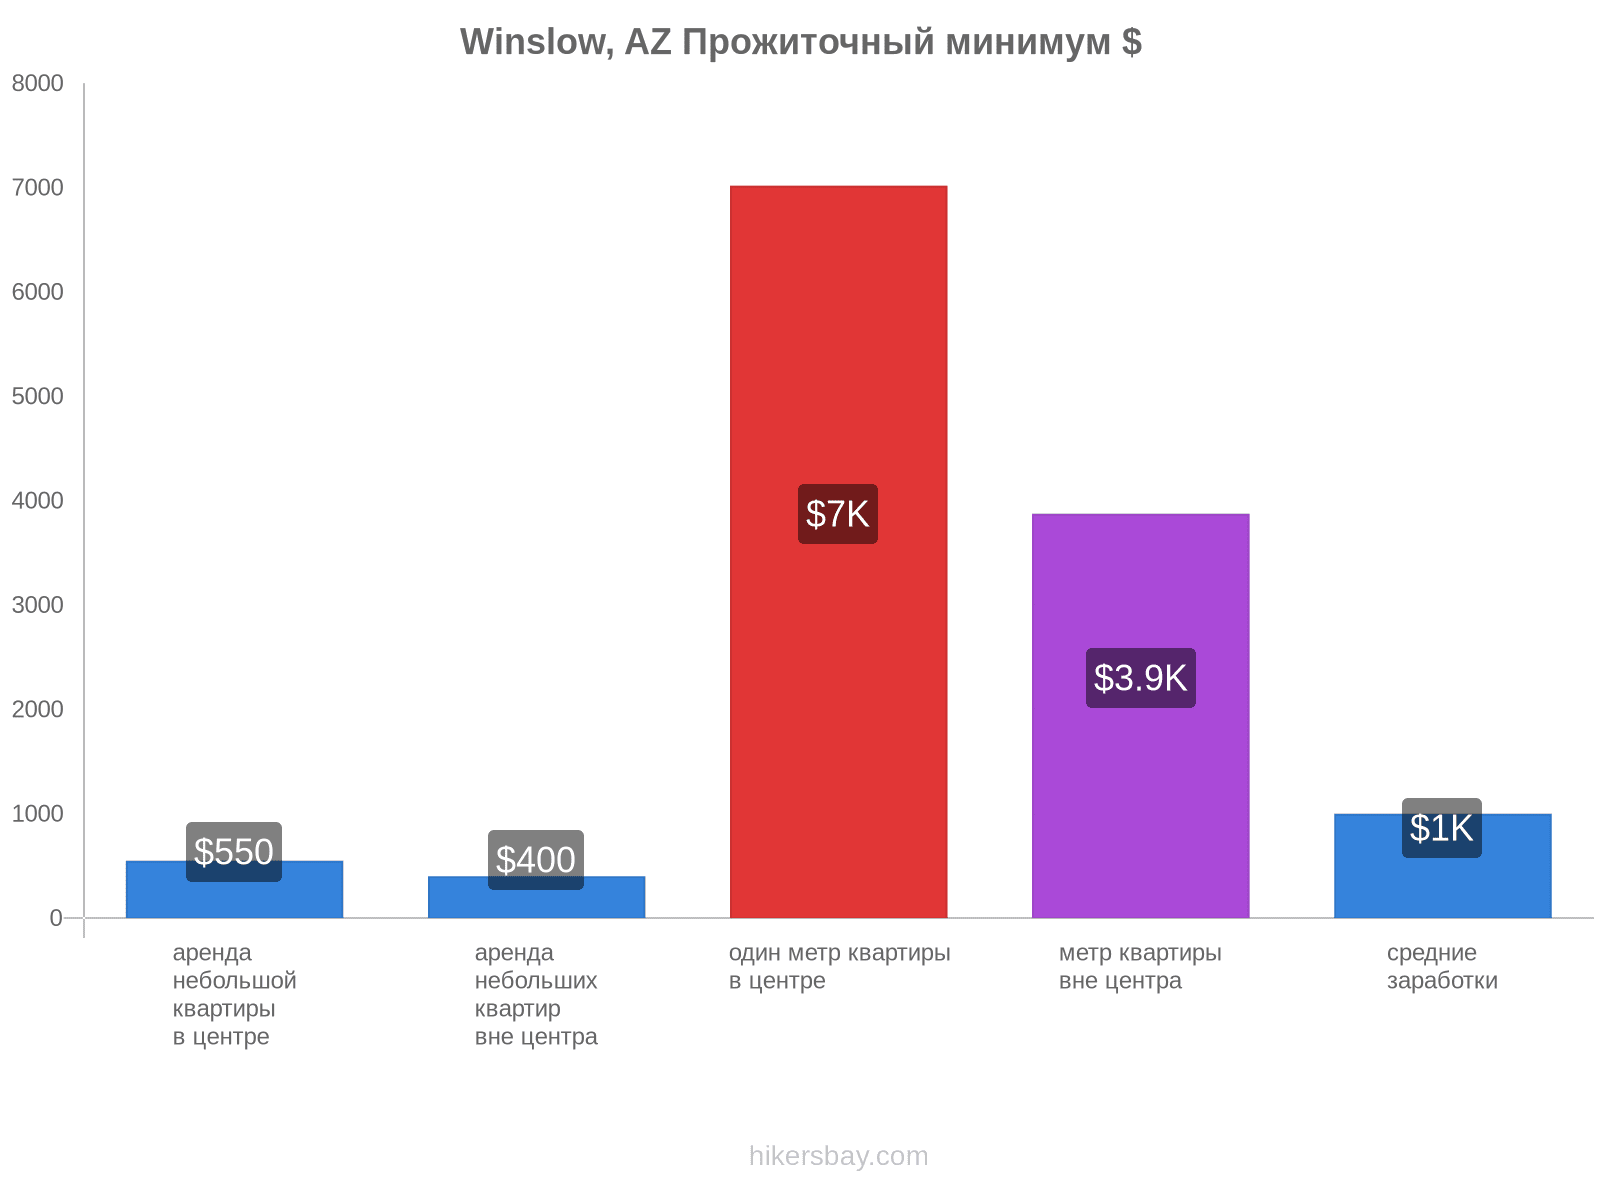 Winslow, AZ стоимость жизни hikersbay.com